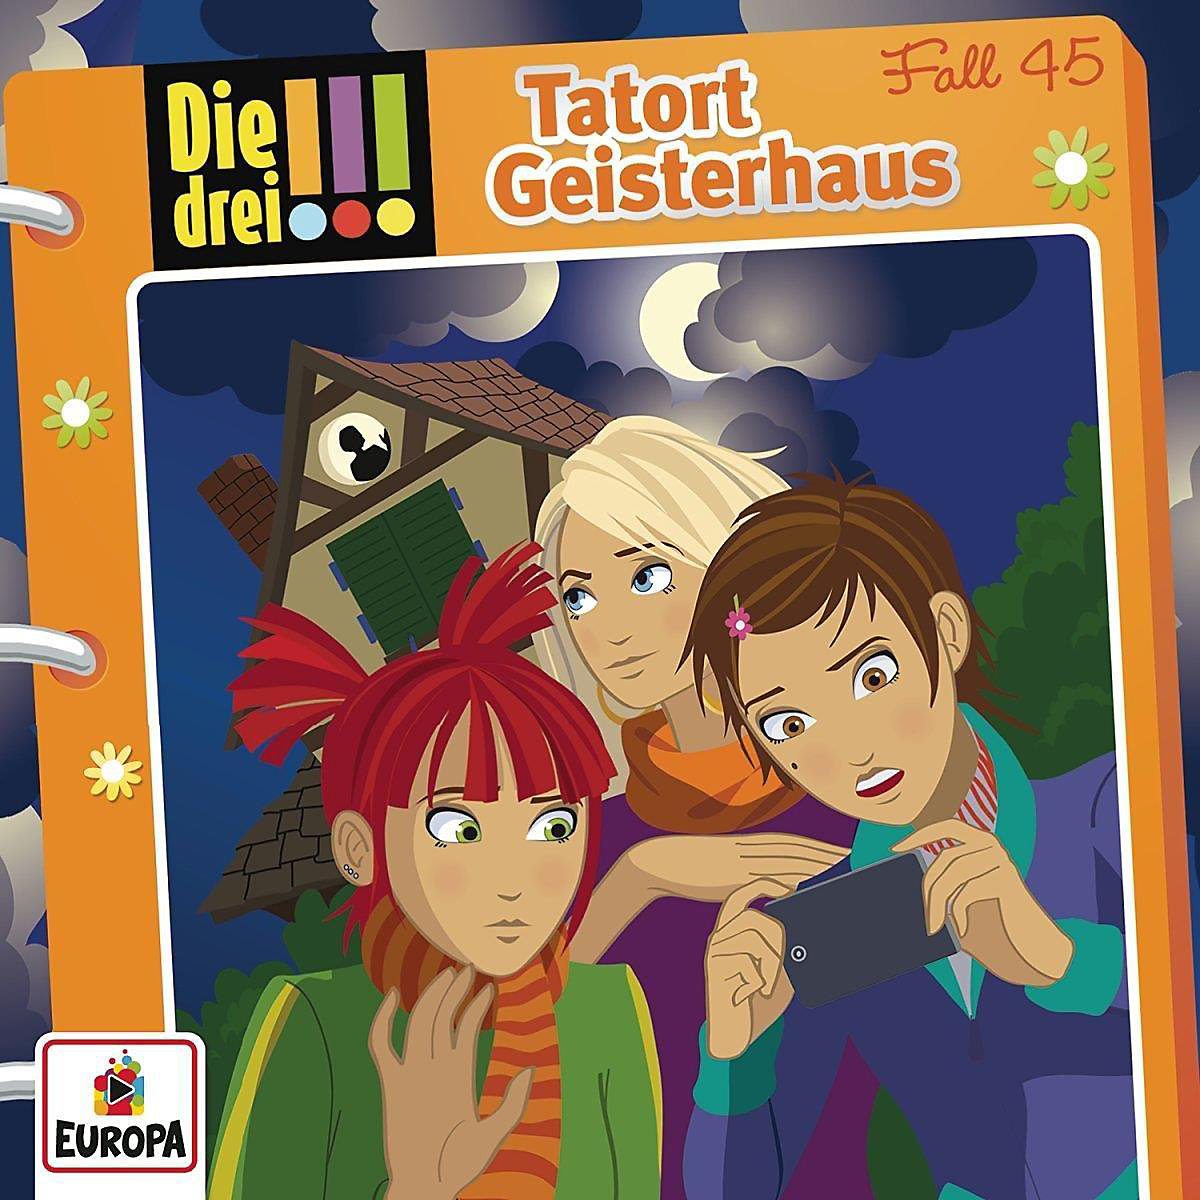 CD Die drei !!! 045 Tatort Geisterhaus